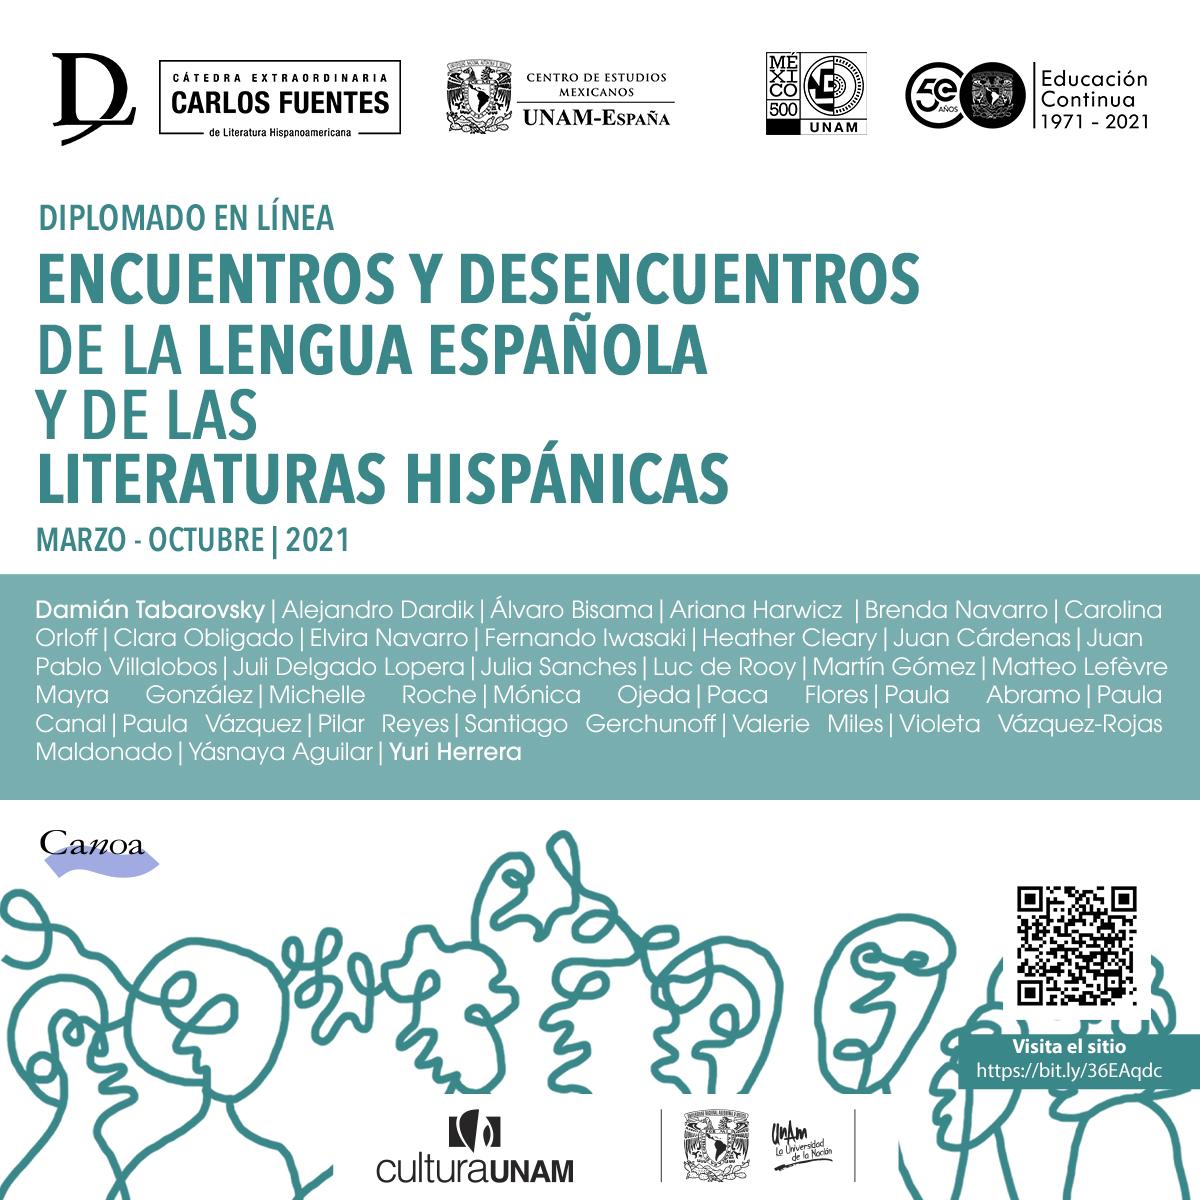 Diplomado Encuentros y desencuentros de la lengua española y de las literaturas hispánicas. Indebran Torres, Diseñador.